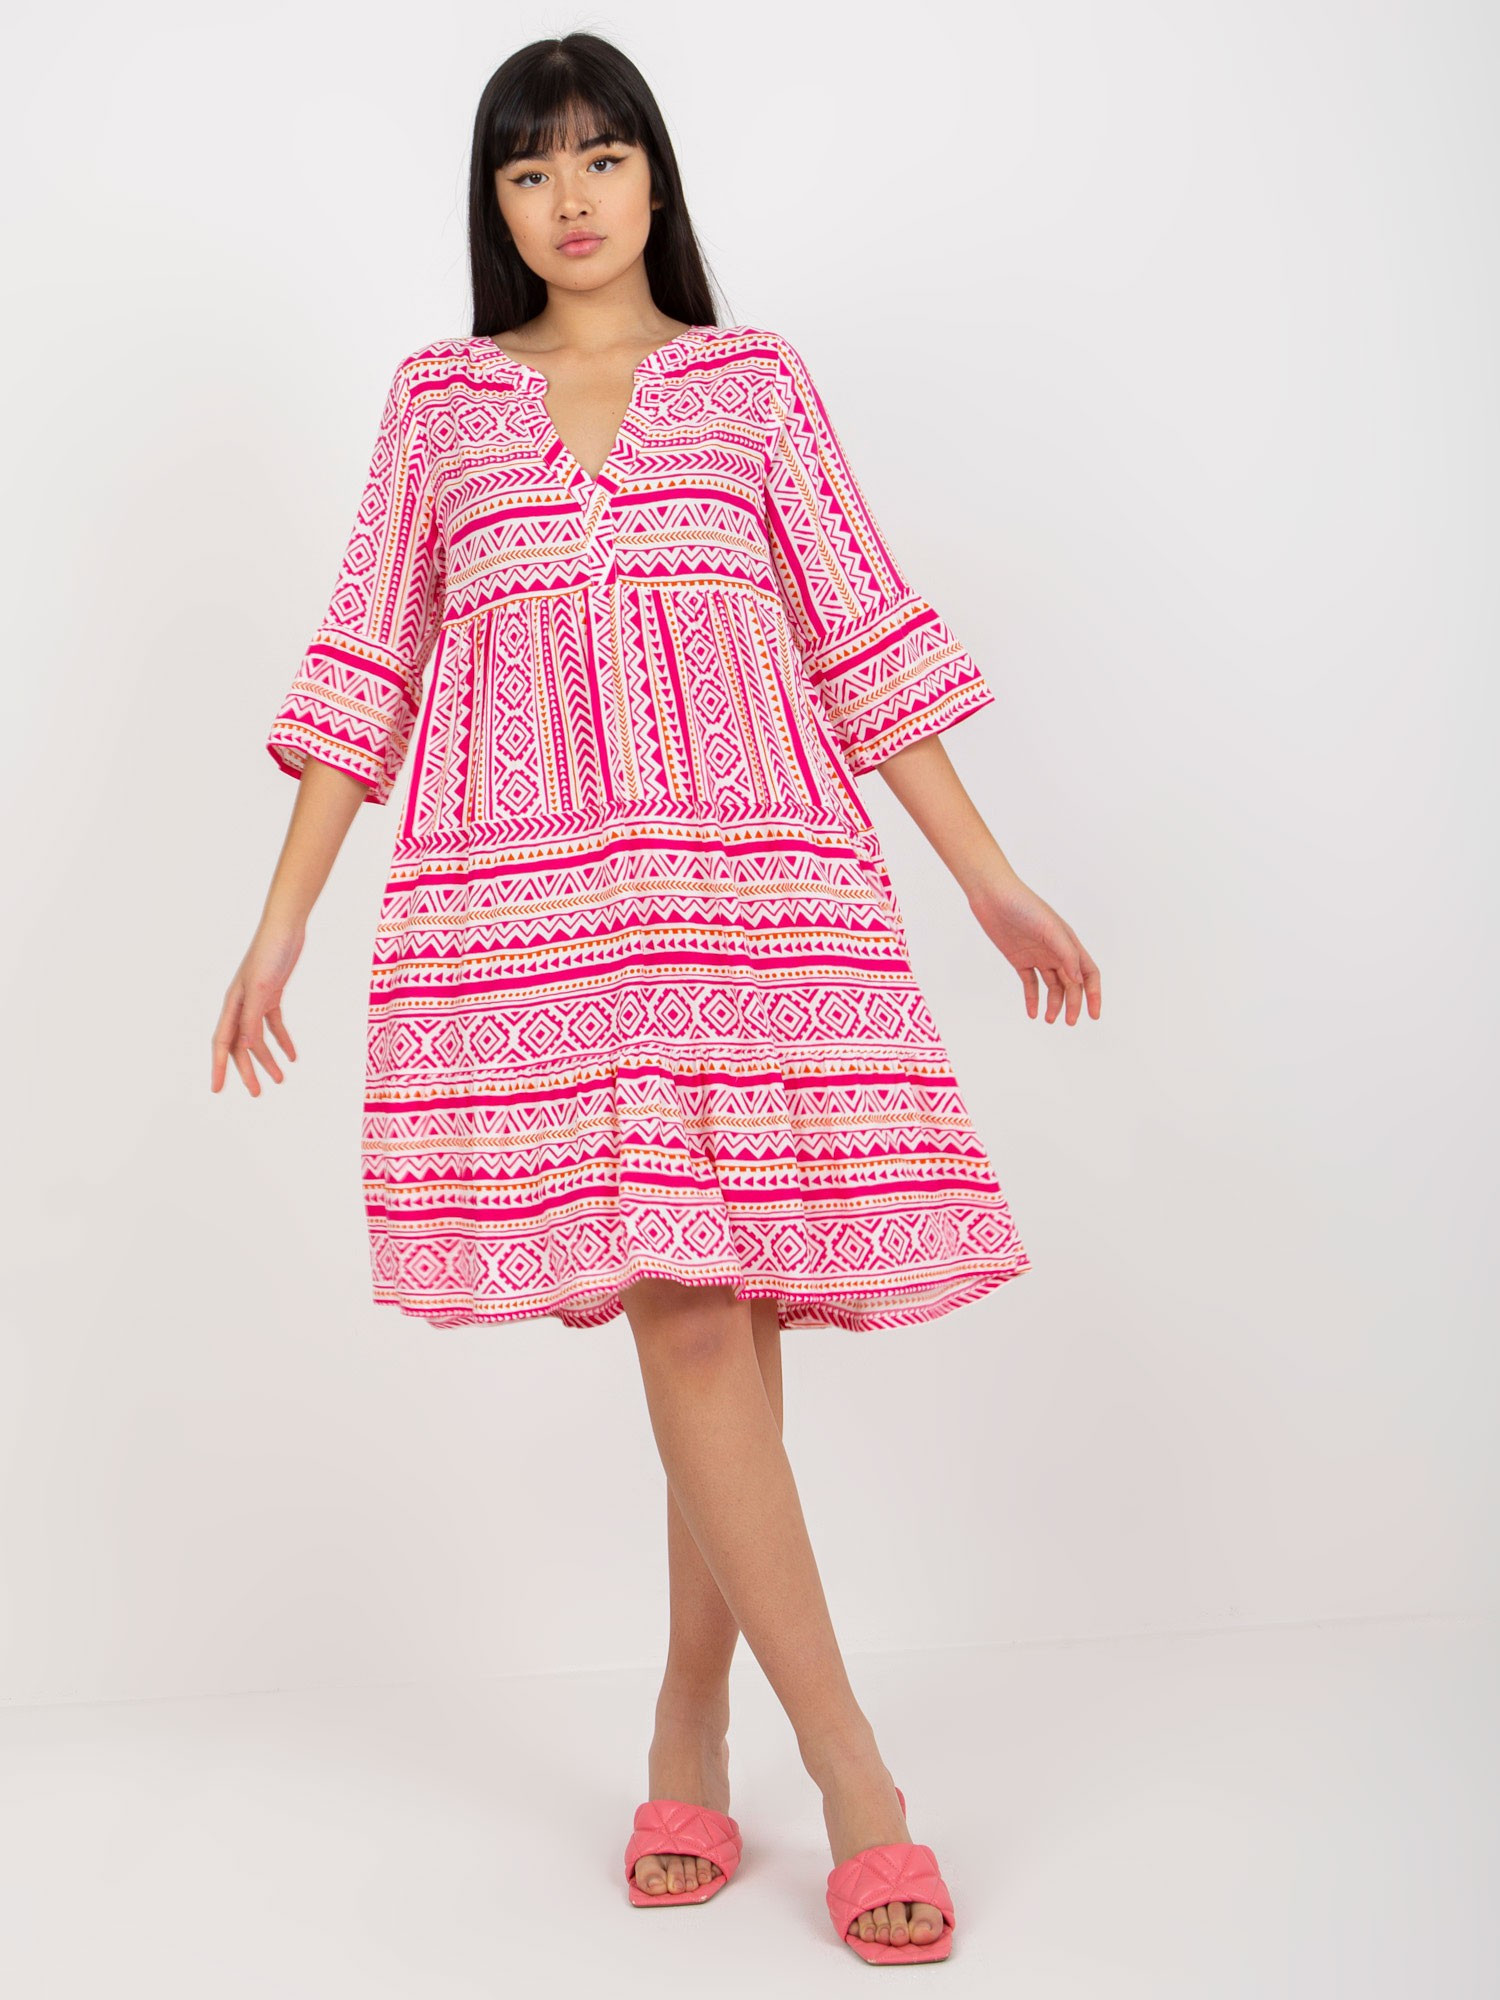 Dámské šaty model 18116378 bílé a růžové S - FPrice